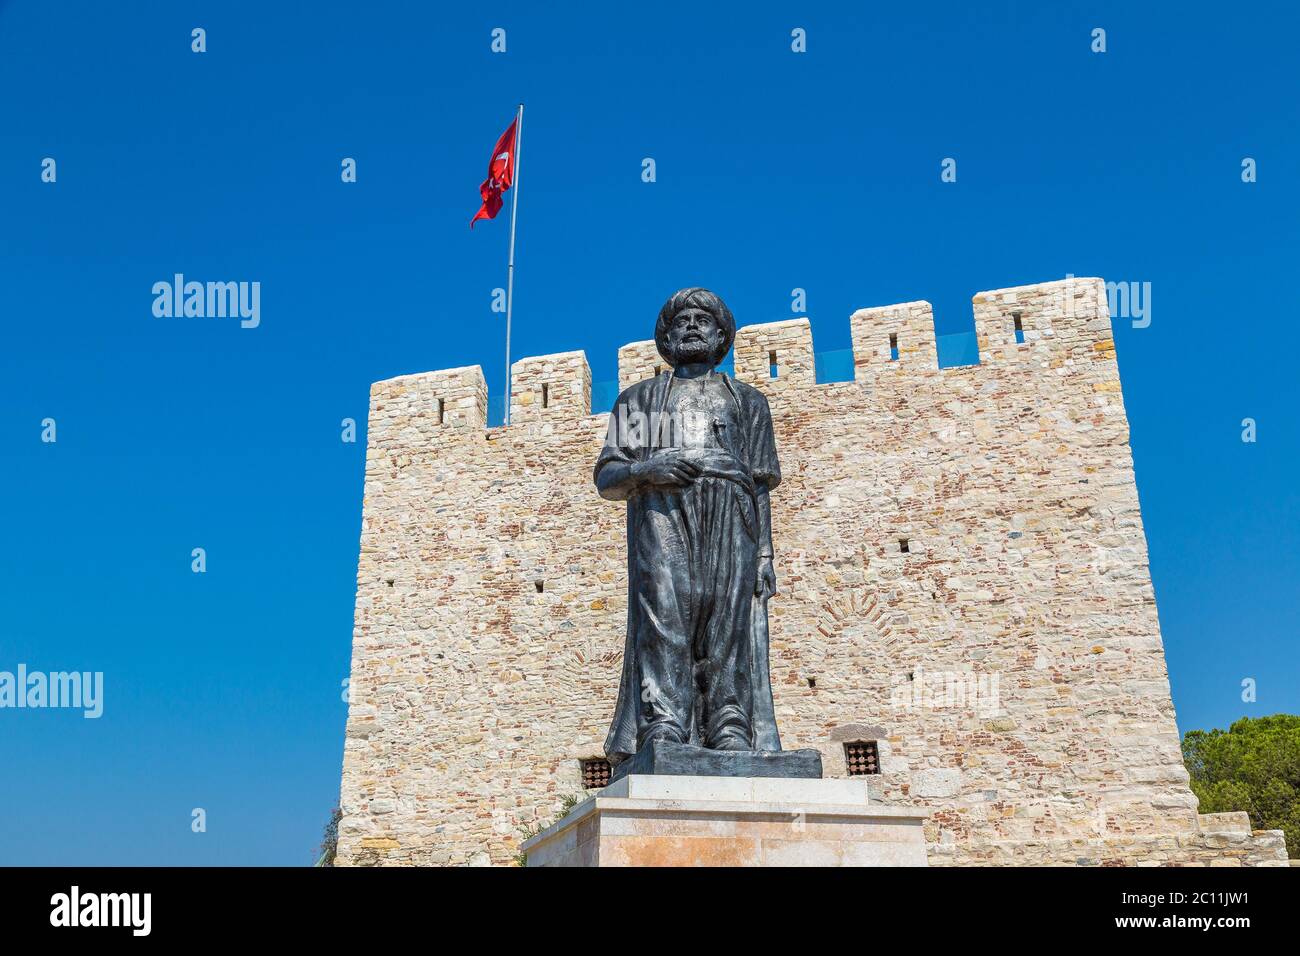 Statua di Barbaros Hayreddin Pasha e il castello dei pirati sull'isola di Pigeon a Kusadasi, Turchia, in una bella giornata estiva Foto Stock